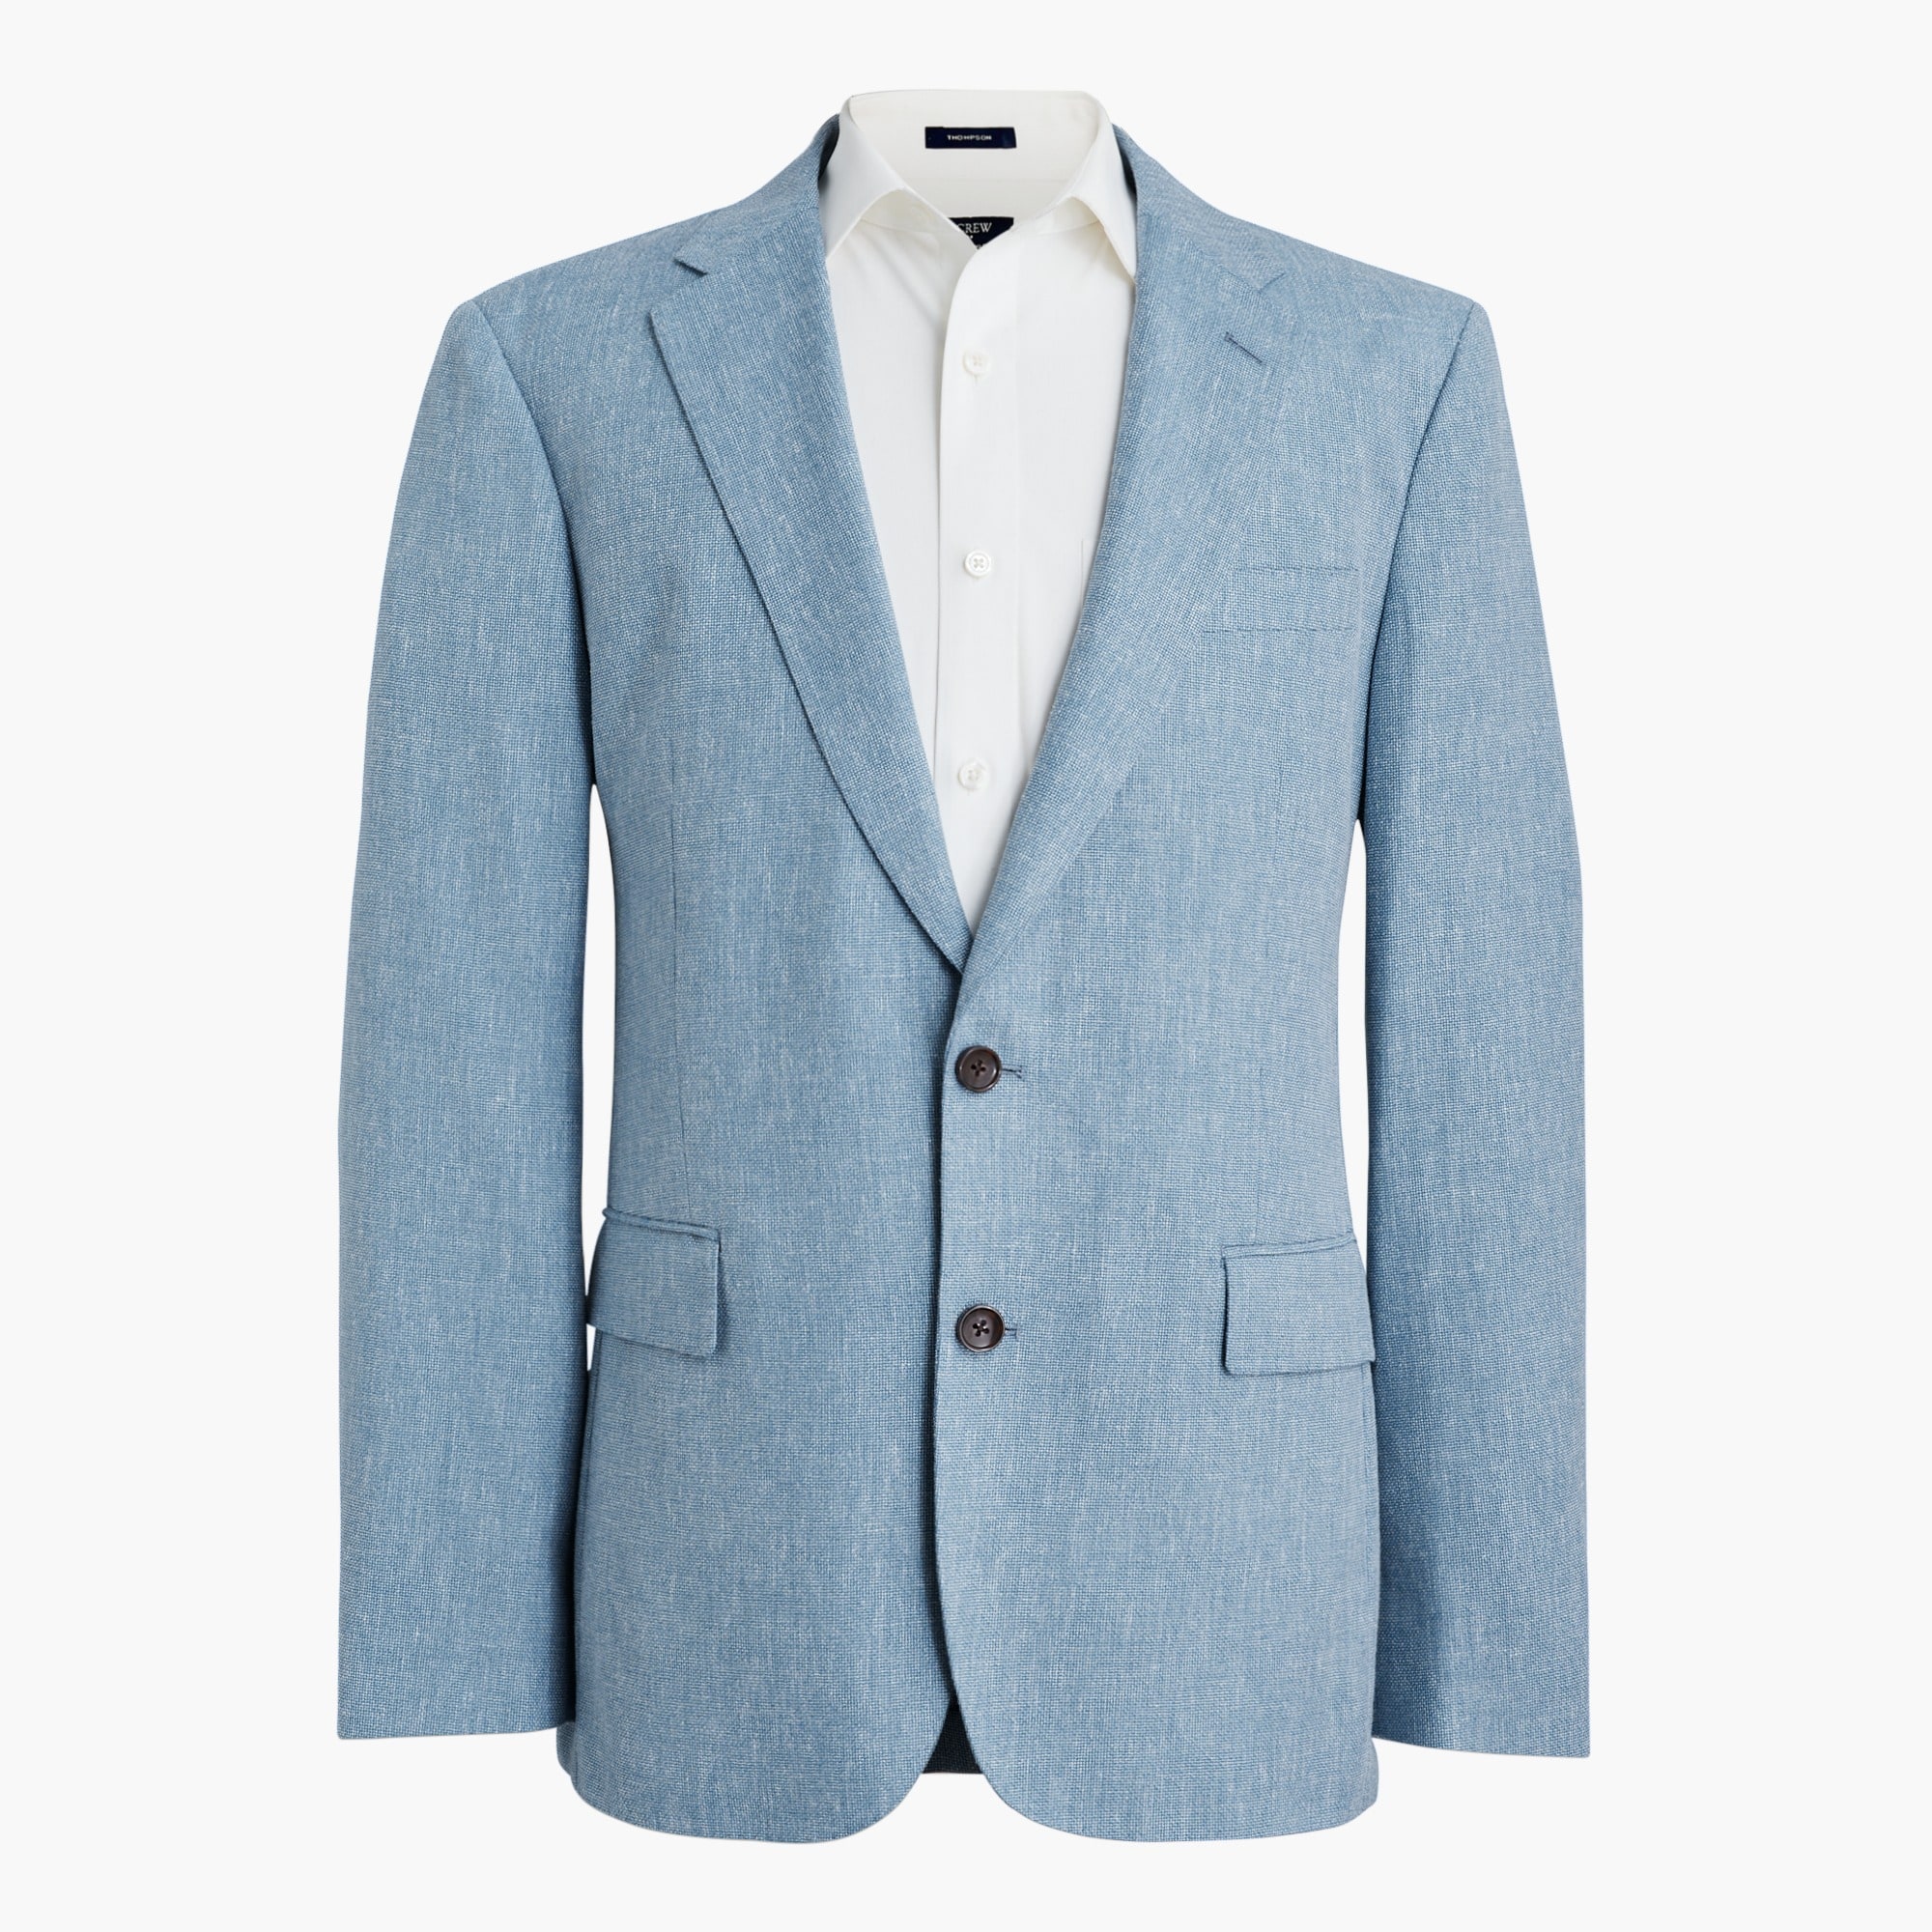 Textured slim-fit Thompson suit jacket